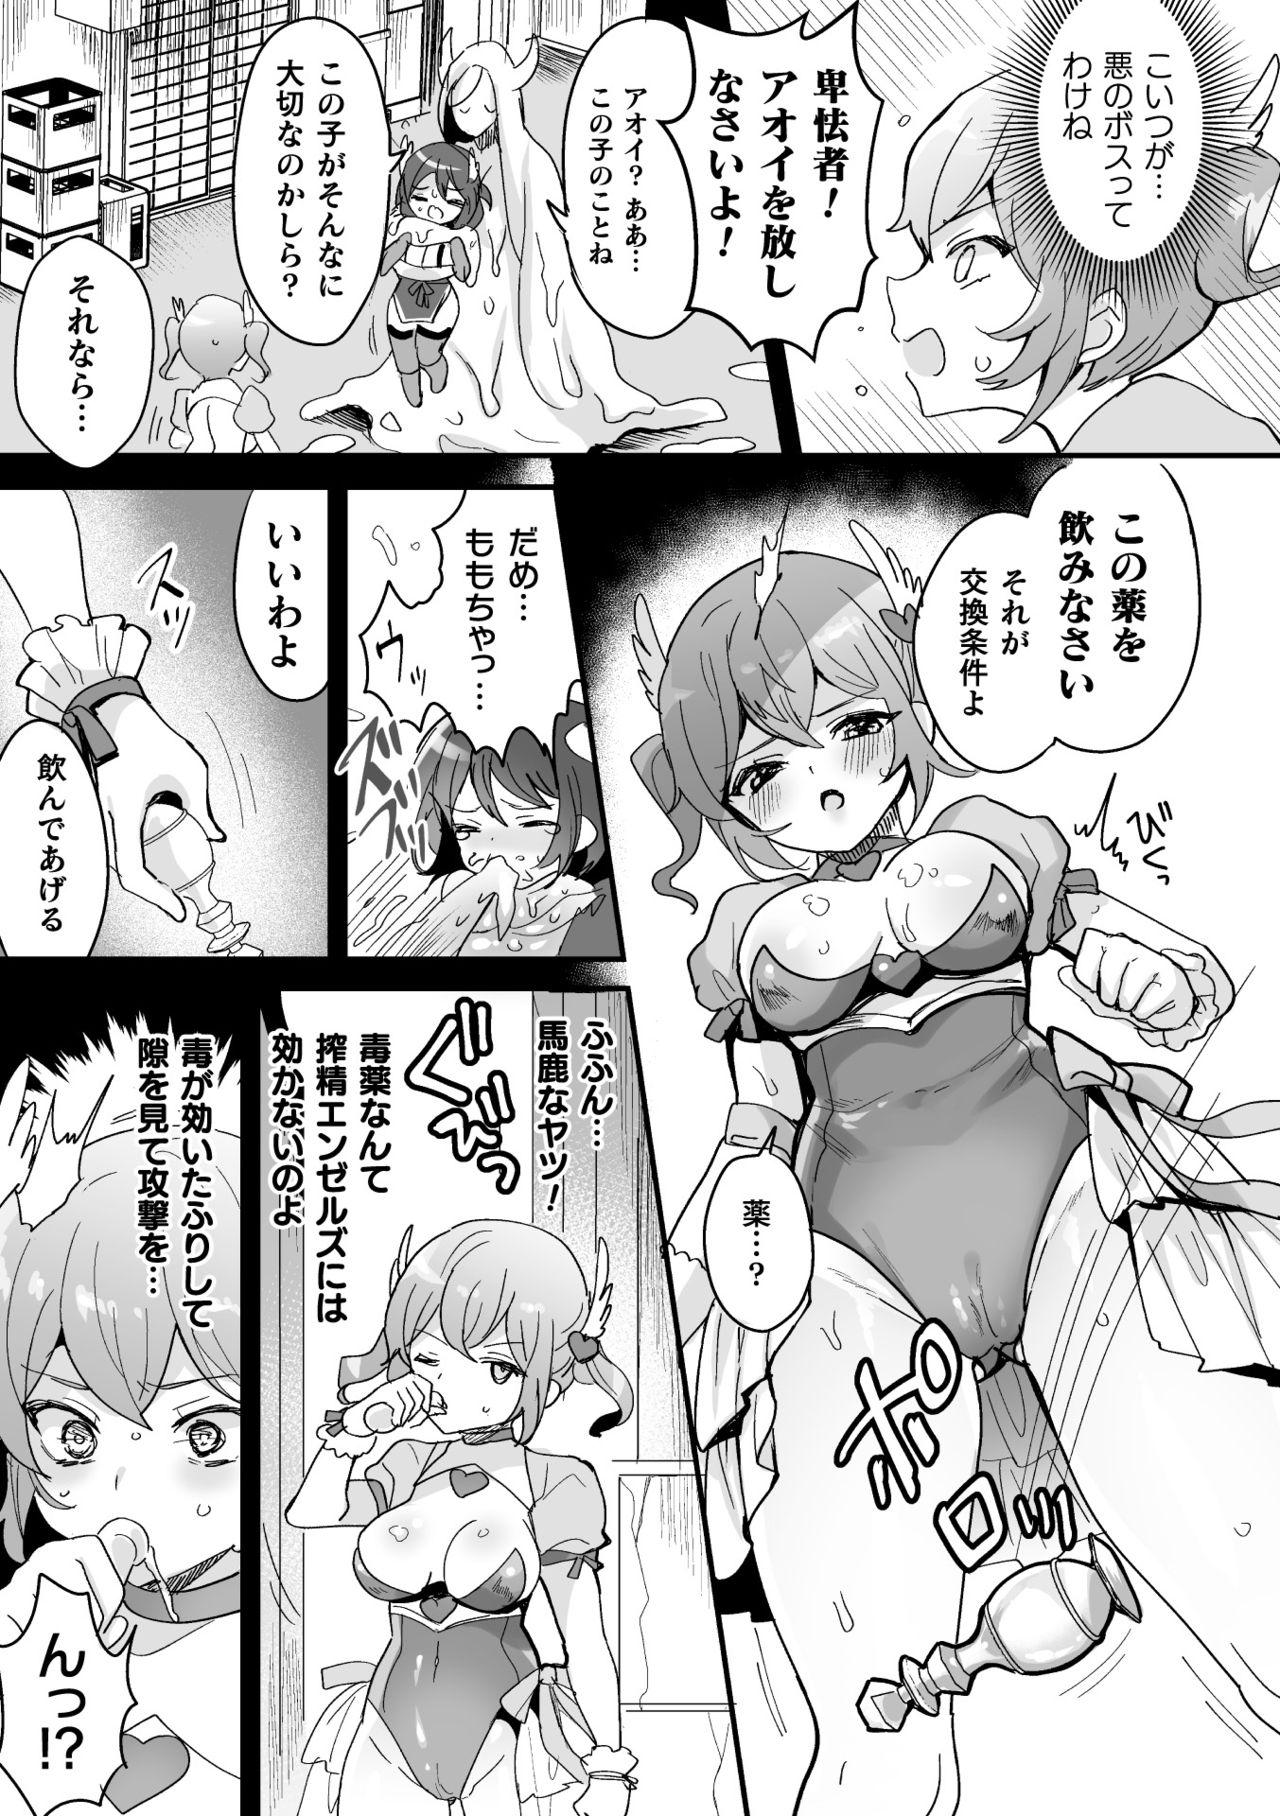 Topless 2D Comic Magazine - Futanari Mesugaki Sakusei Namaiki Zako Mesu Sao o Wakarase Shibori! Vol. 2 Futa - Page 9